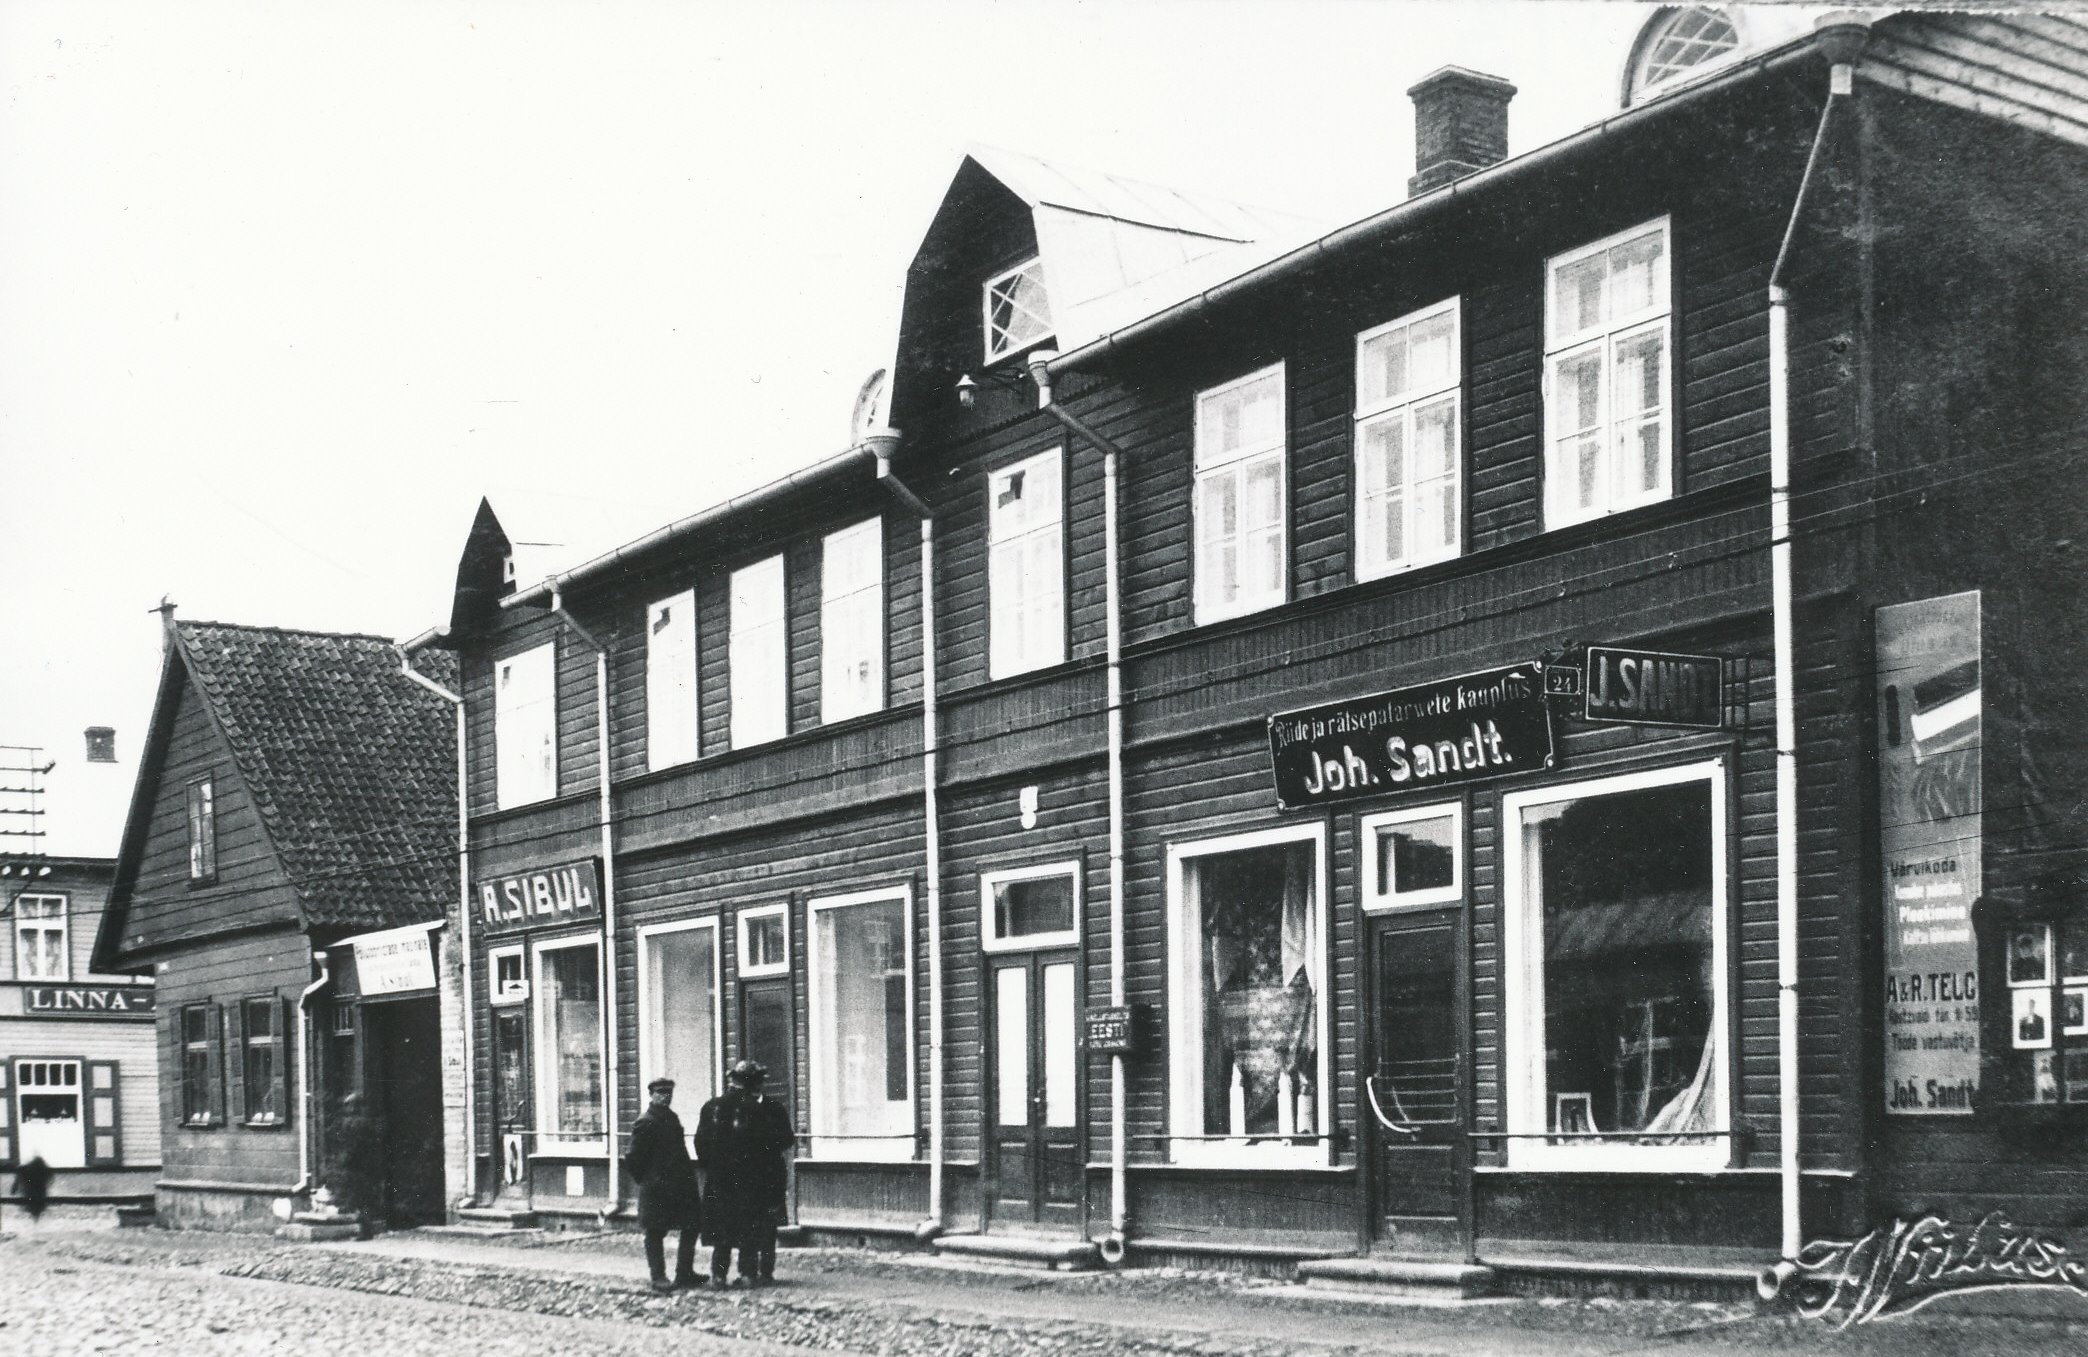 Foto. Võru.Kauplused "A. Sibul" ja "Joh. Sandt" Jüri tänaval. Jaan Niiluse foto 1930. aastate alul.